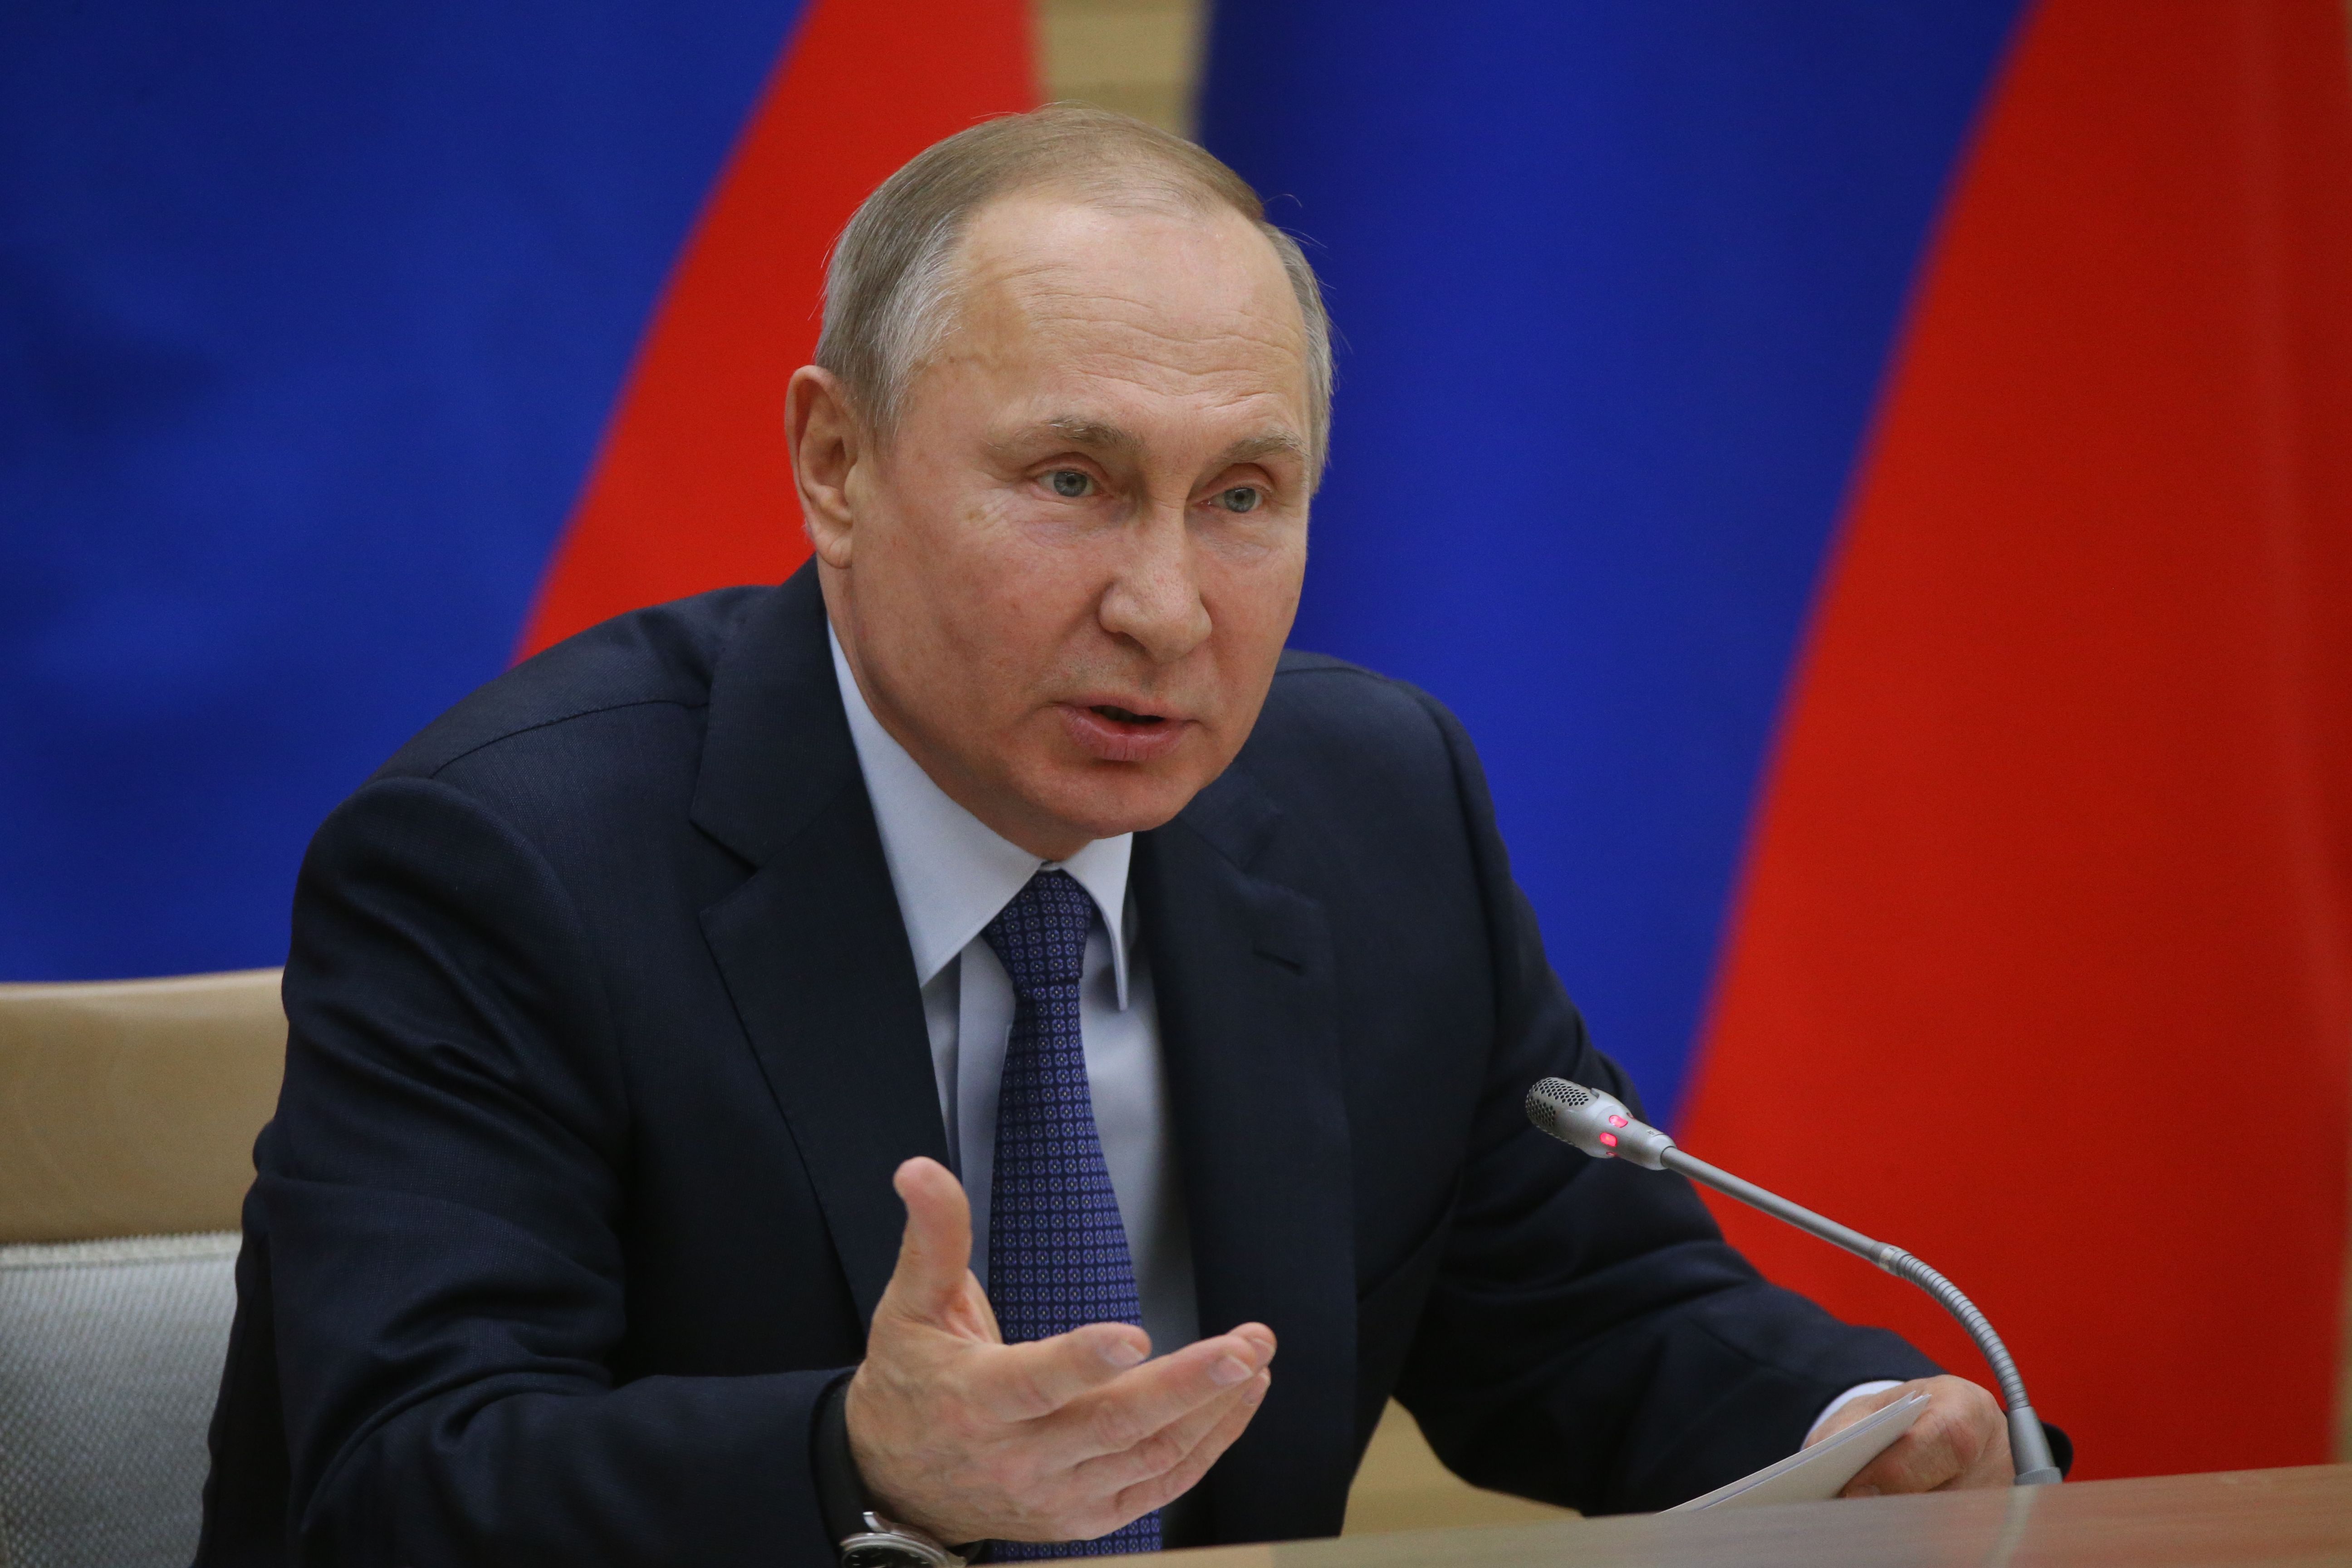 Володимир Путін видав заяву про зернову угоду - чи продовжать її